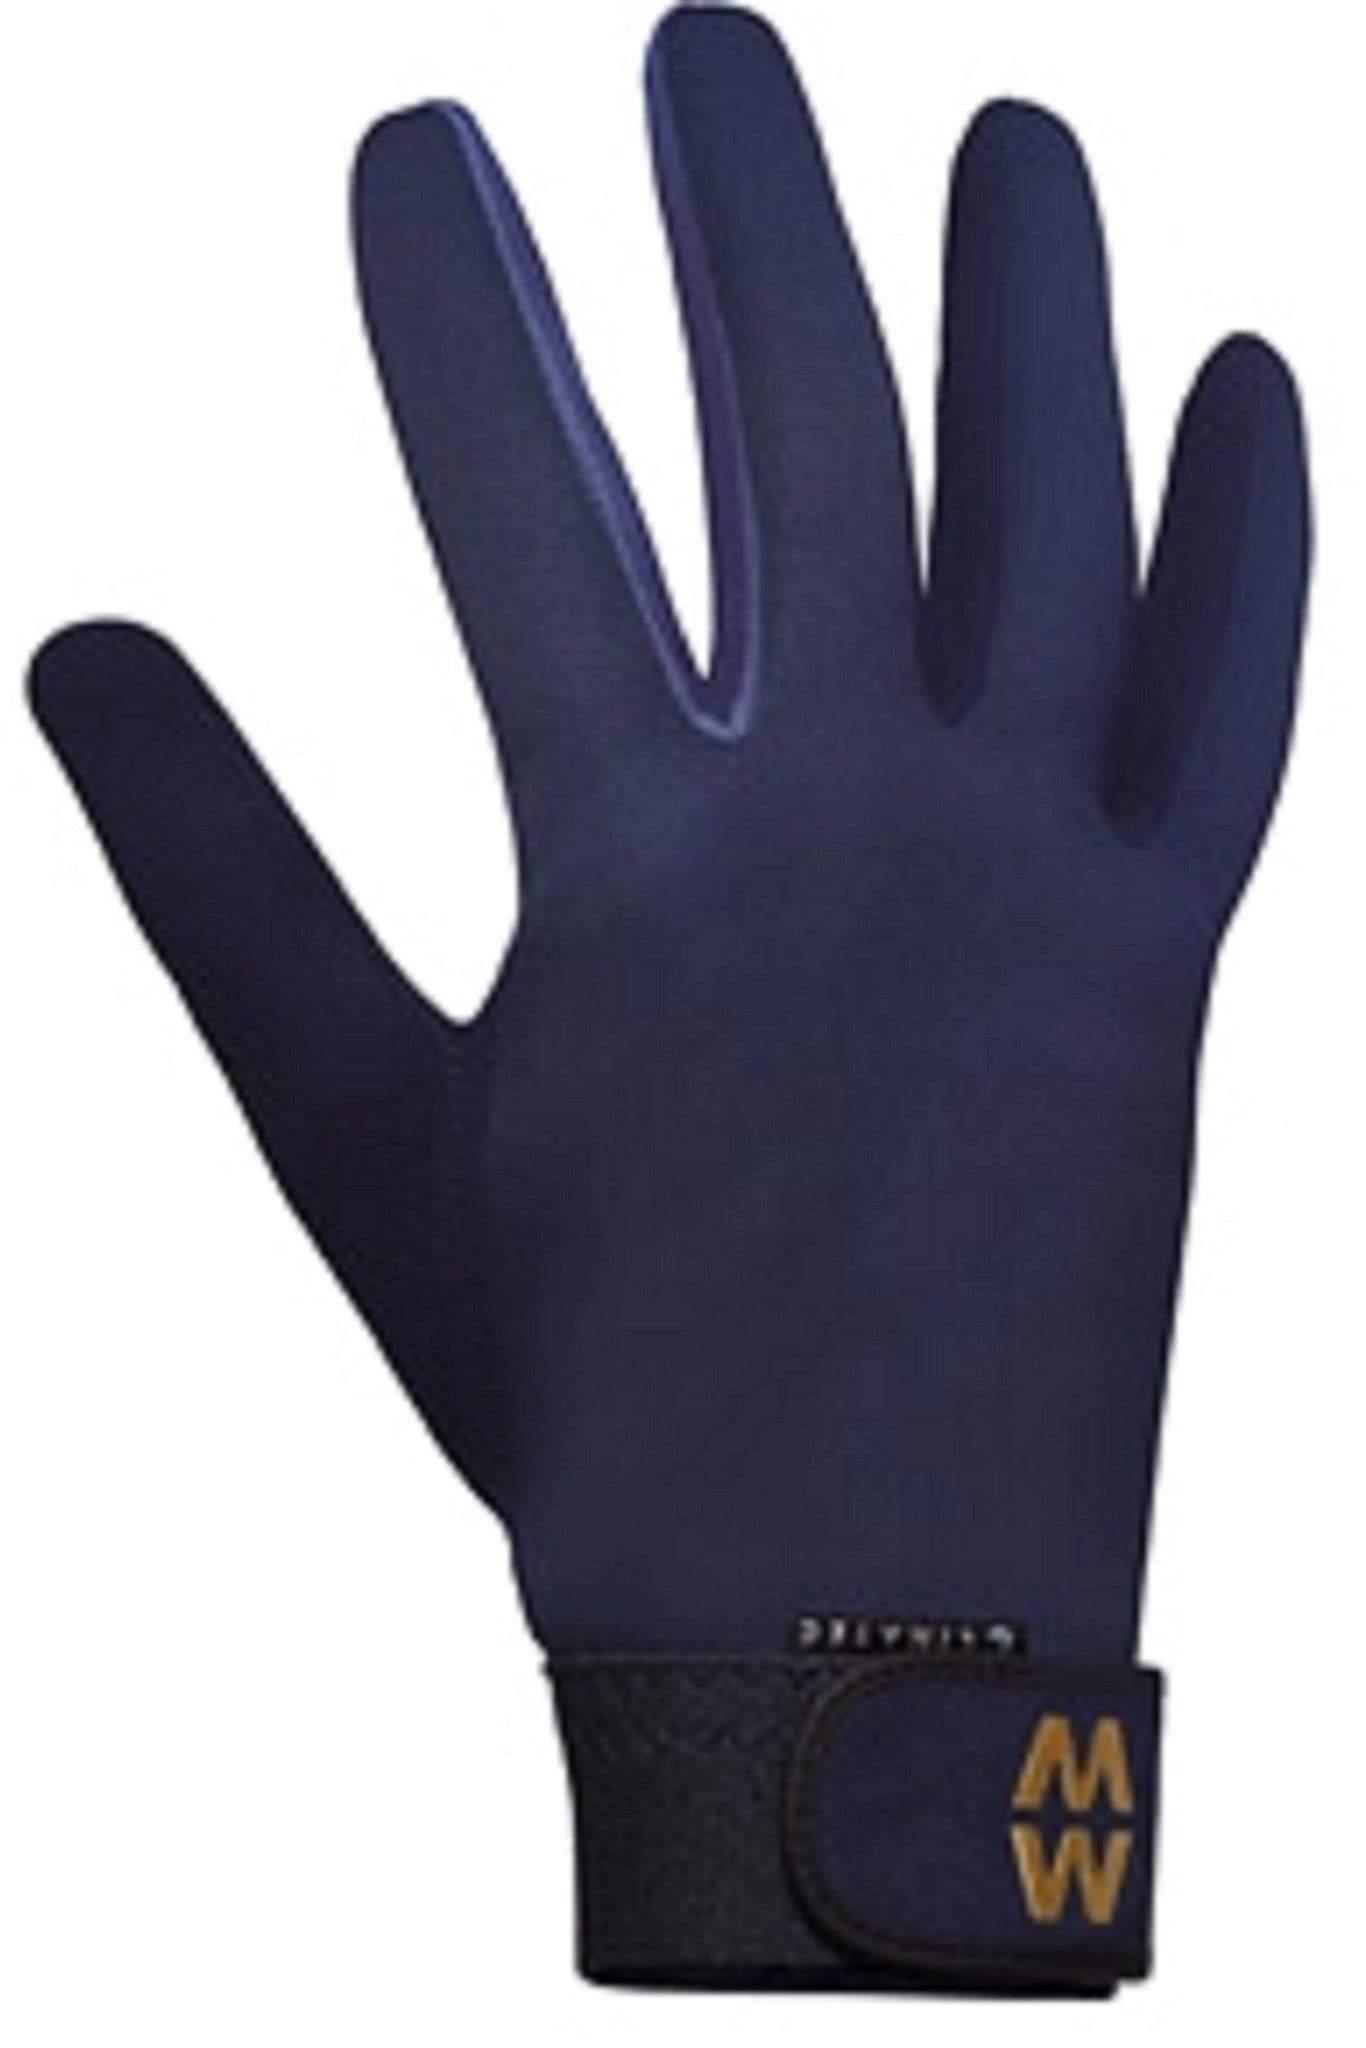 MacWet Gloves MacWet Climatec Sports Glove Long Cuff Navy